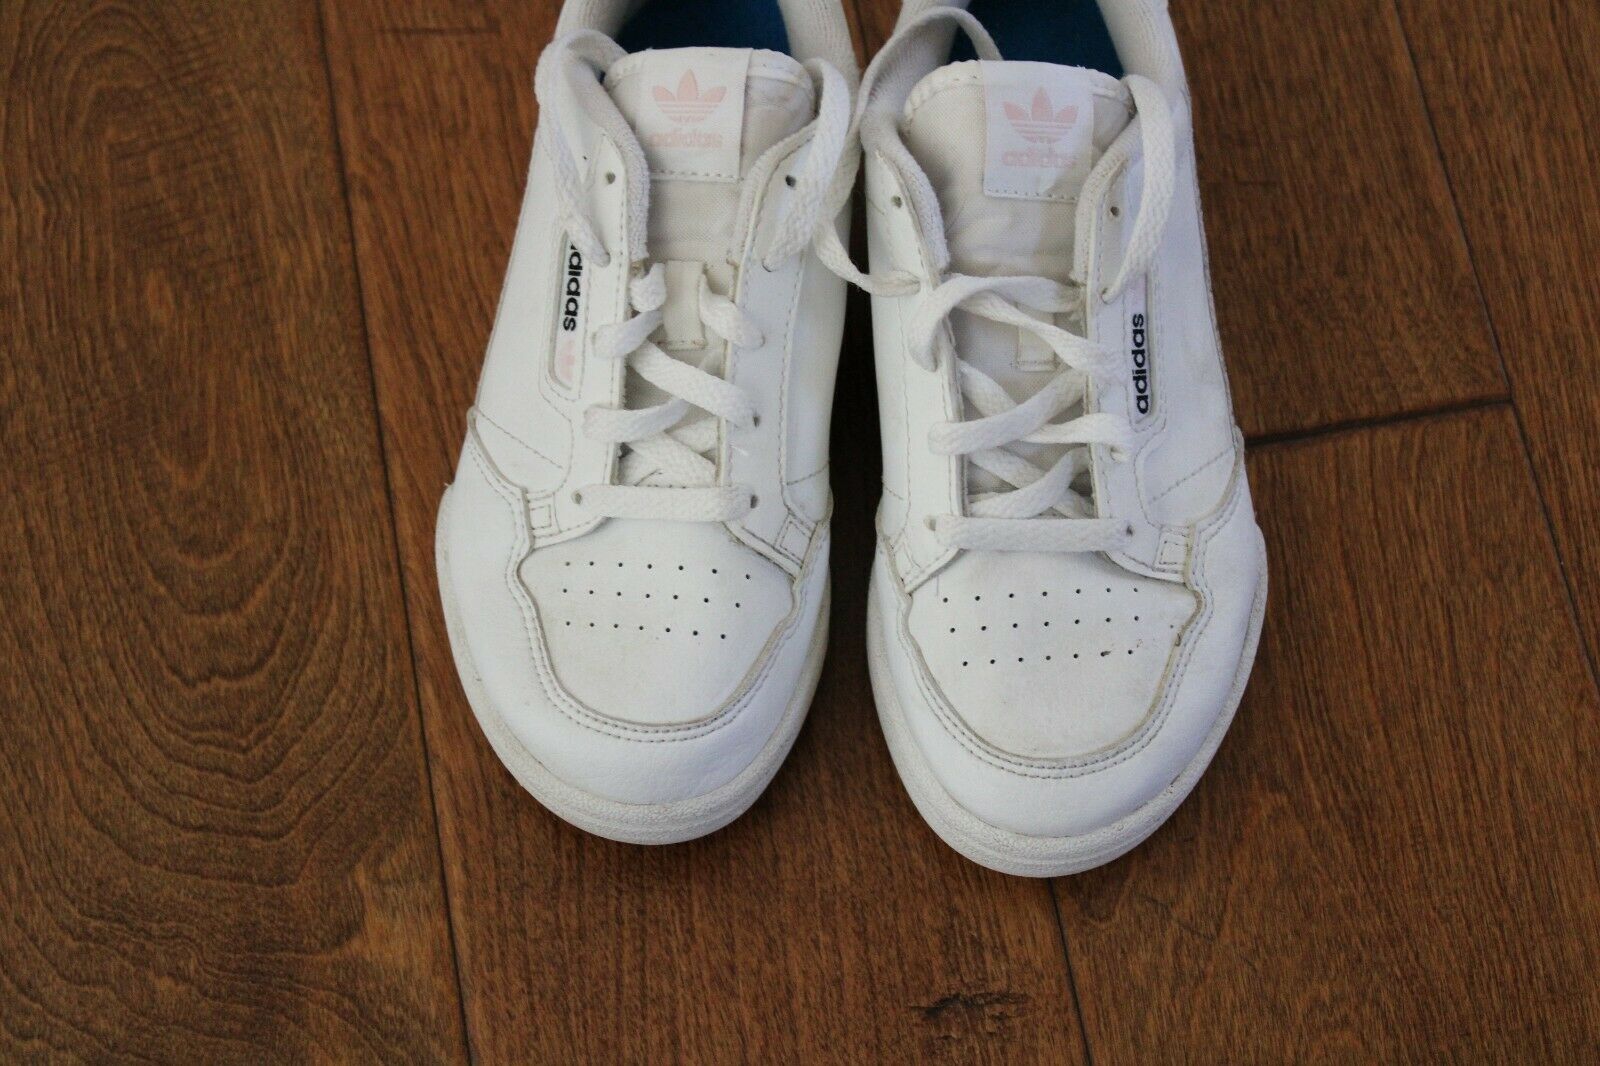 Adidas White Shoes Girls Size 13